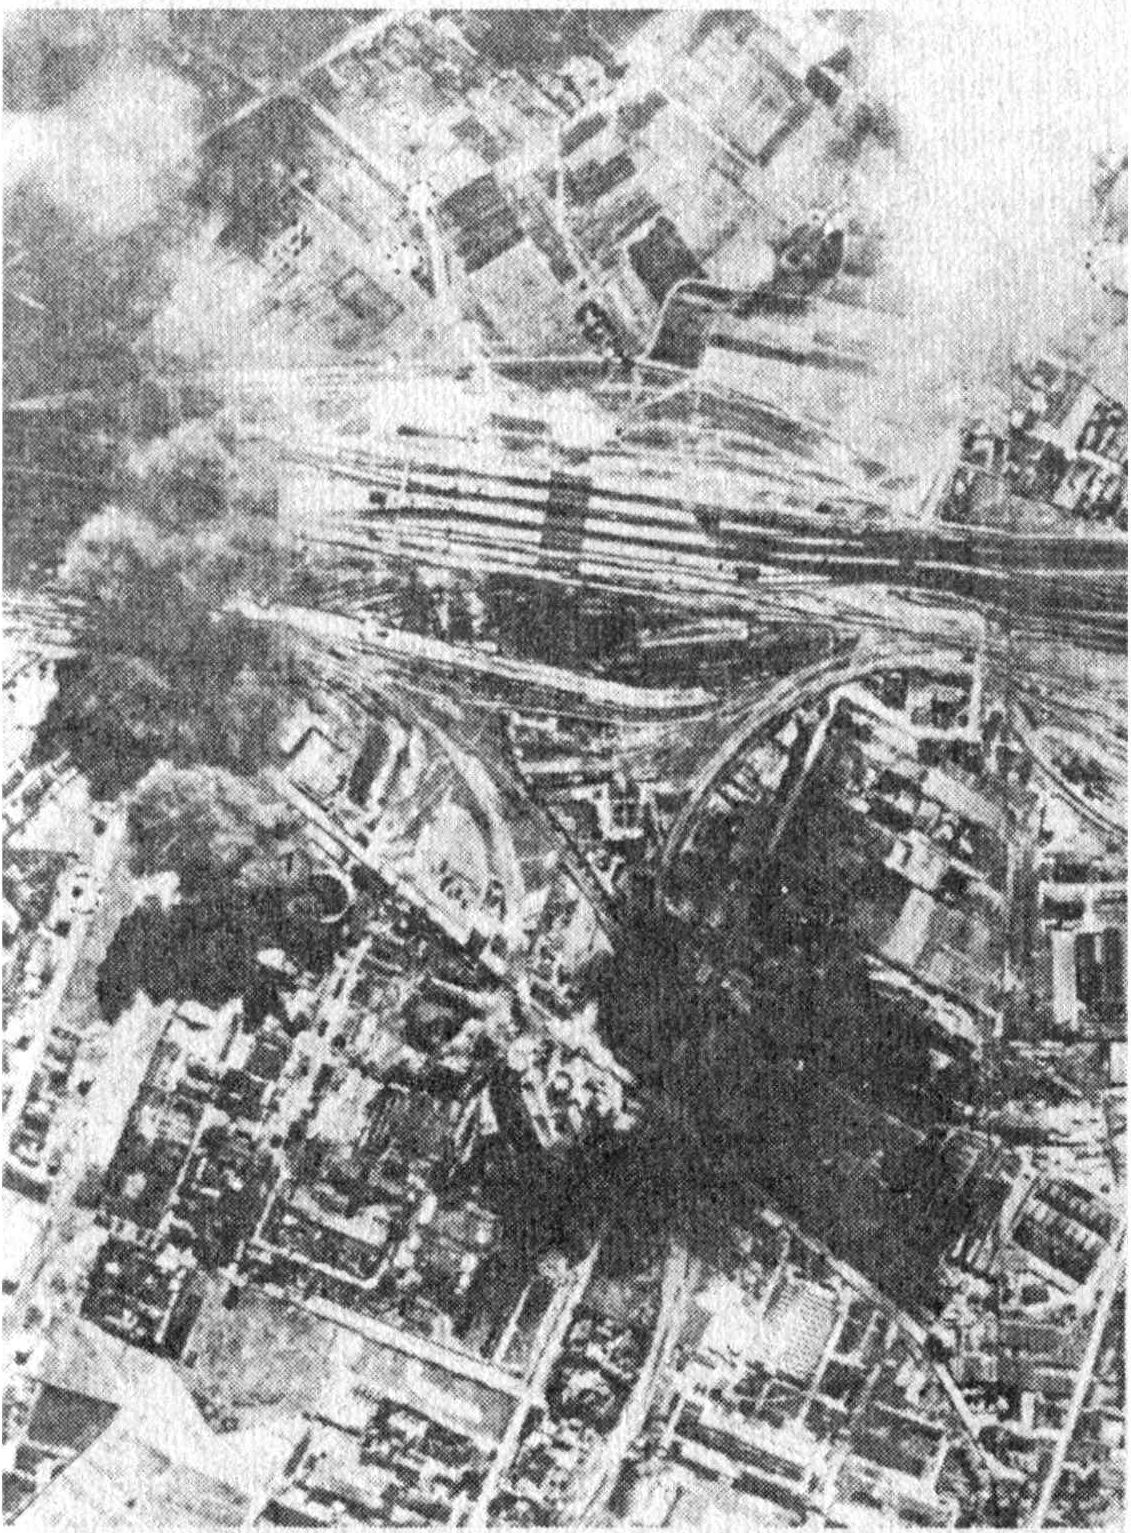 Бомбардировщики Люфтваффе бомбят Варшаву. На снимке видно, что удар наносится по железной дороге. Немцы подвергали особенно ожесточенной бомбардировке узлы коммуникаций, госпитали, промышленные объекты